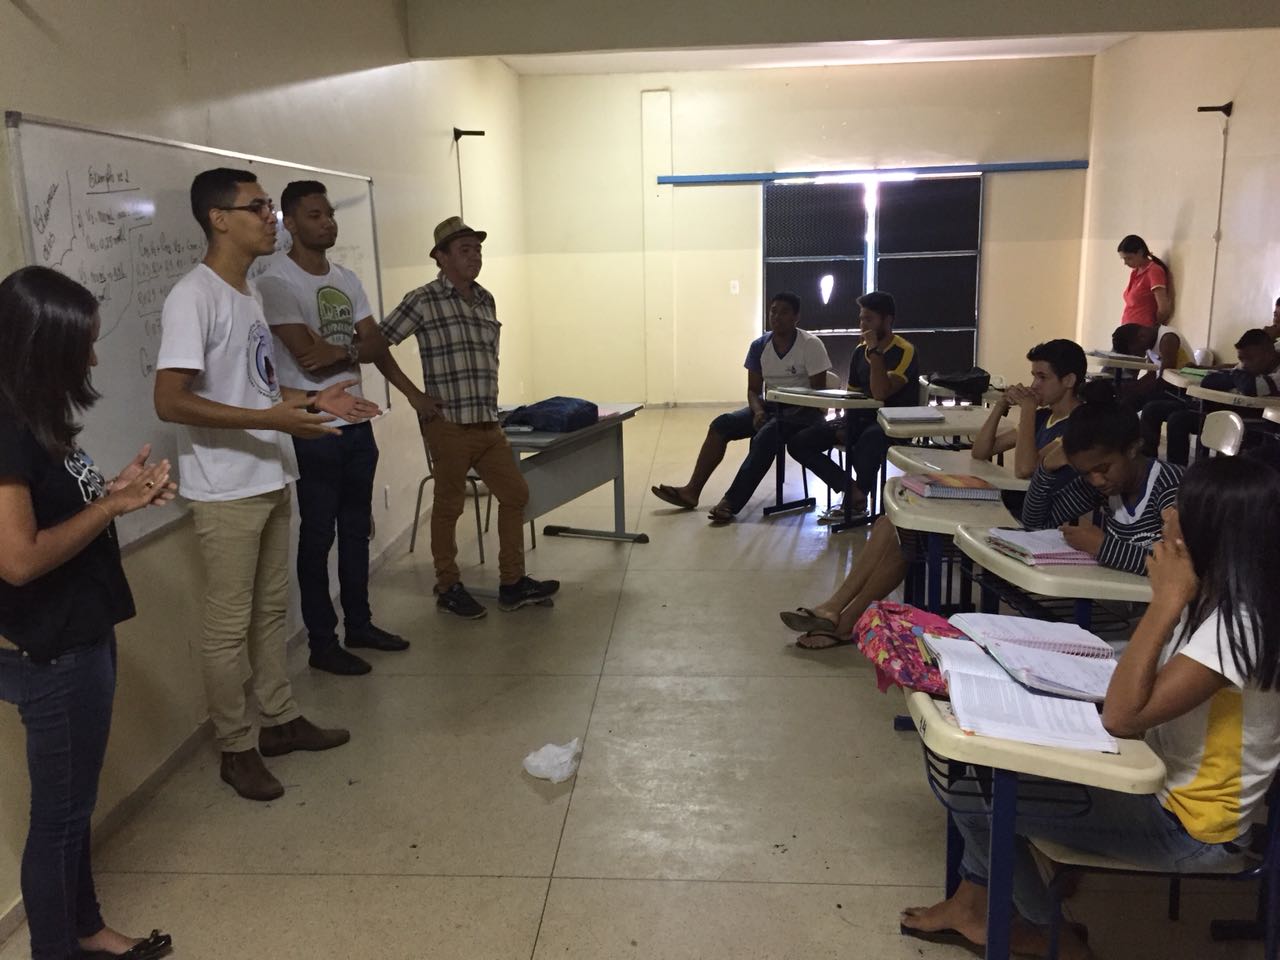 Fundação da Juventude de Porto Nacional e Selo Unicef abordam exercício de cidadania por meio do voto 3